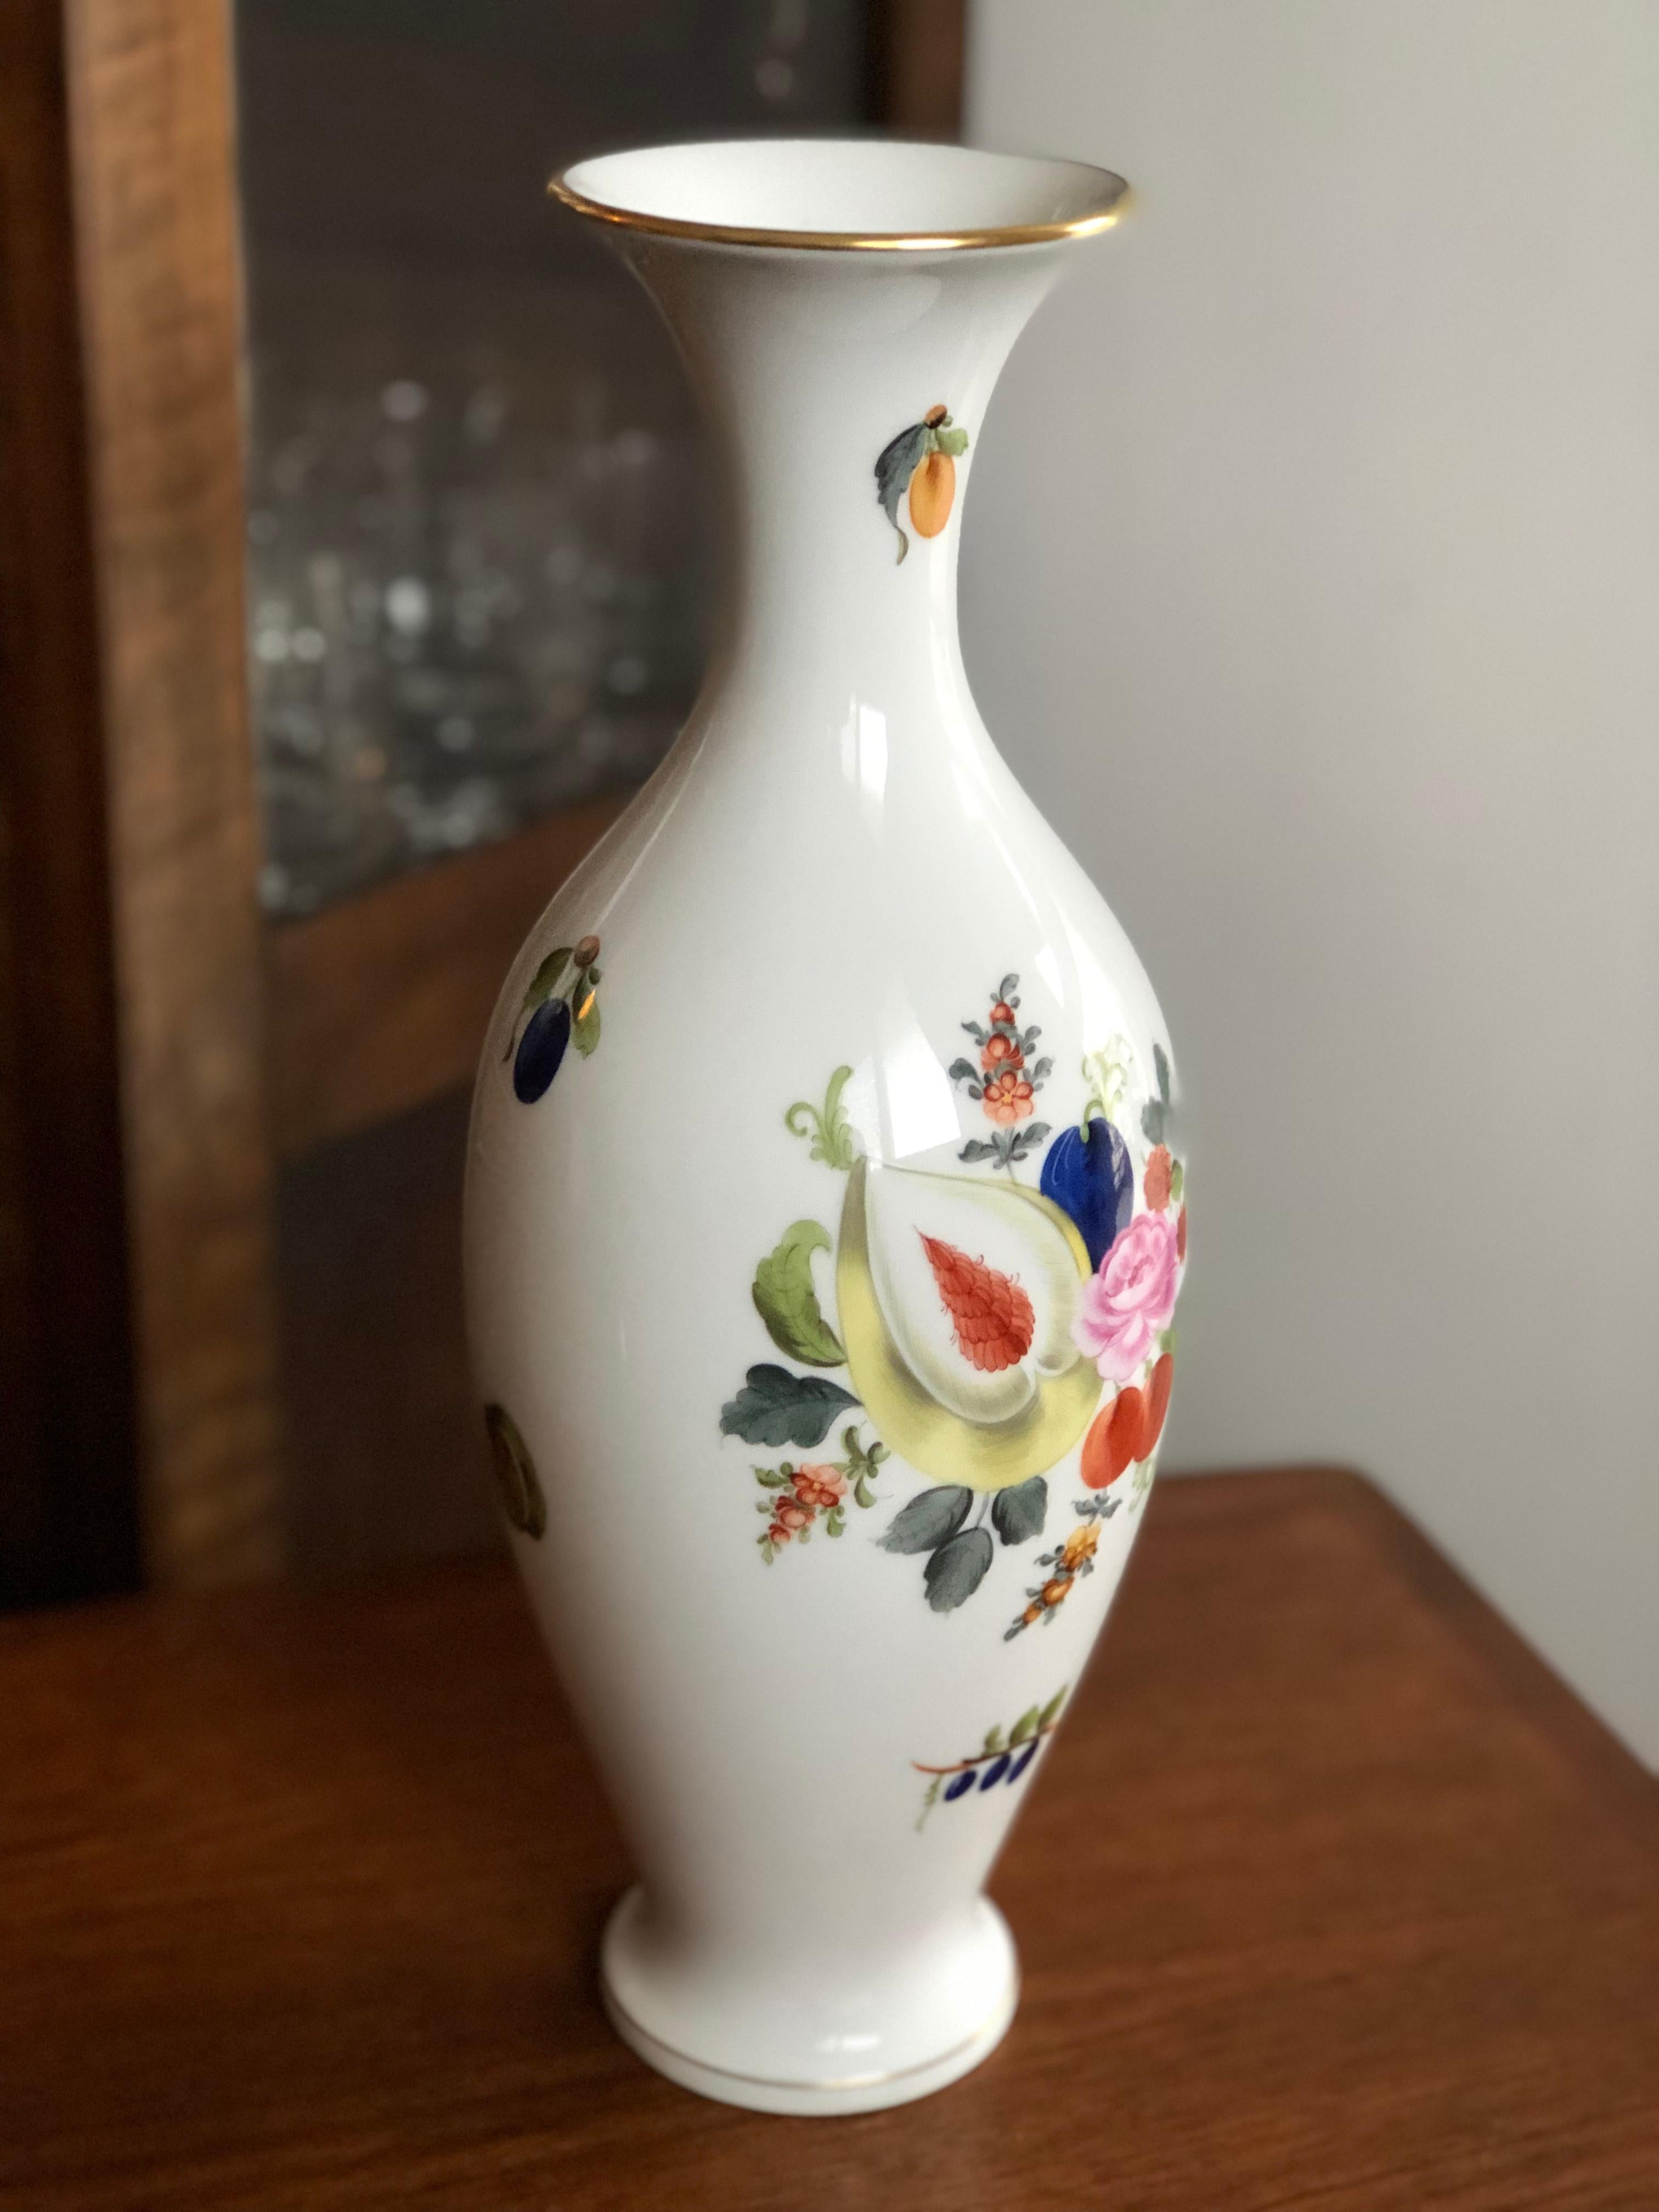 Diese exquisite hohe Vase aus feinem Porzellan von Herend mit ihrem berühmten Design und ihren lebhaften Farben passt in jedes Ambiente. Handgefertigt und handbemalt ist sie genau 33 cm hoch. Toller Zustand.

 